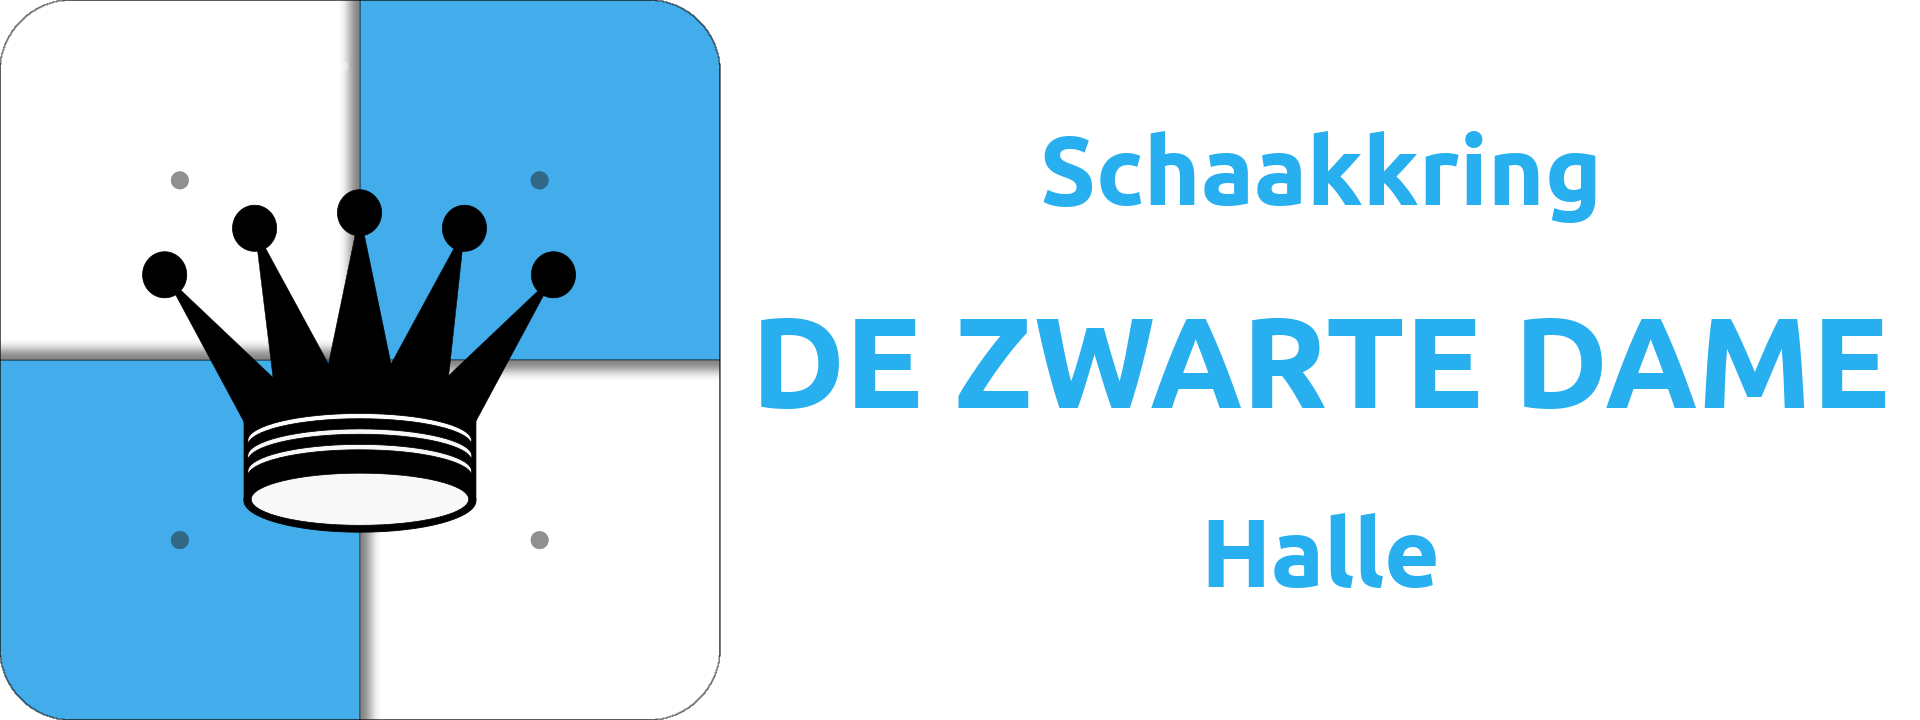 Schaakkring DE ZWARTE DAME Halle